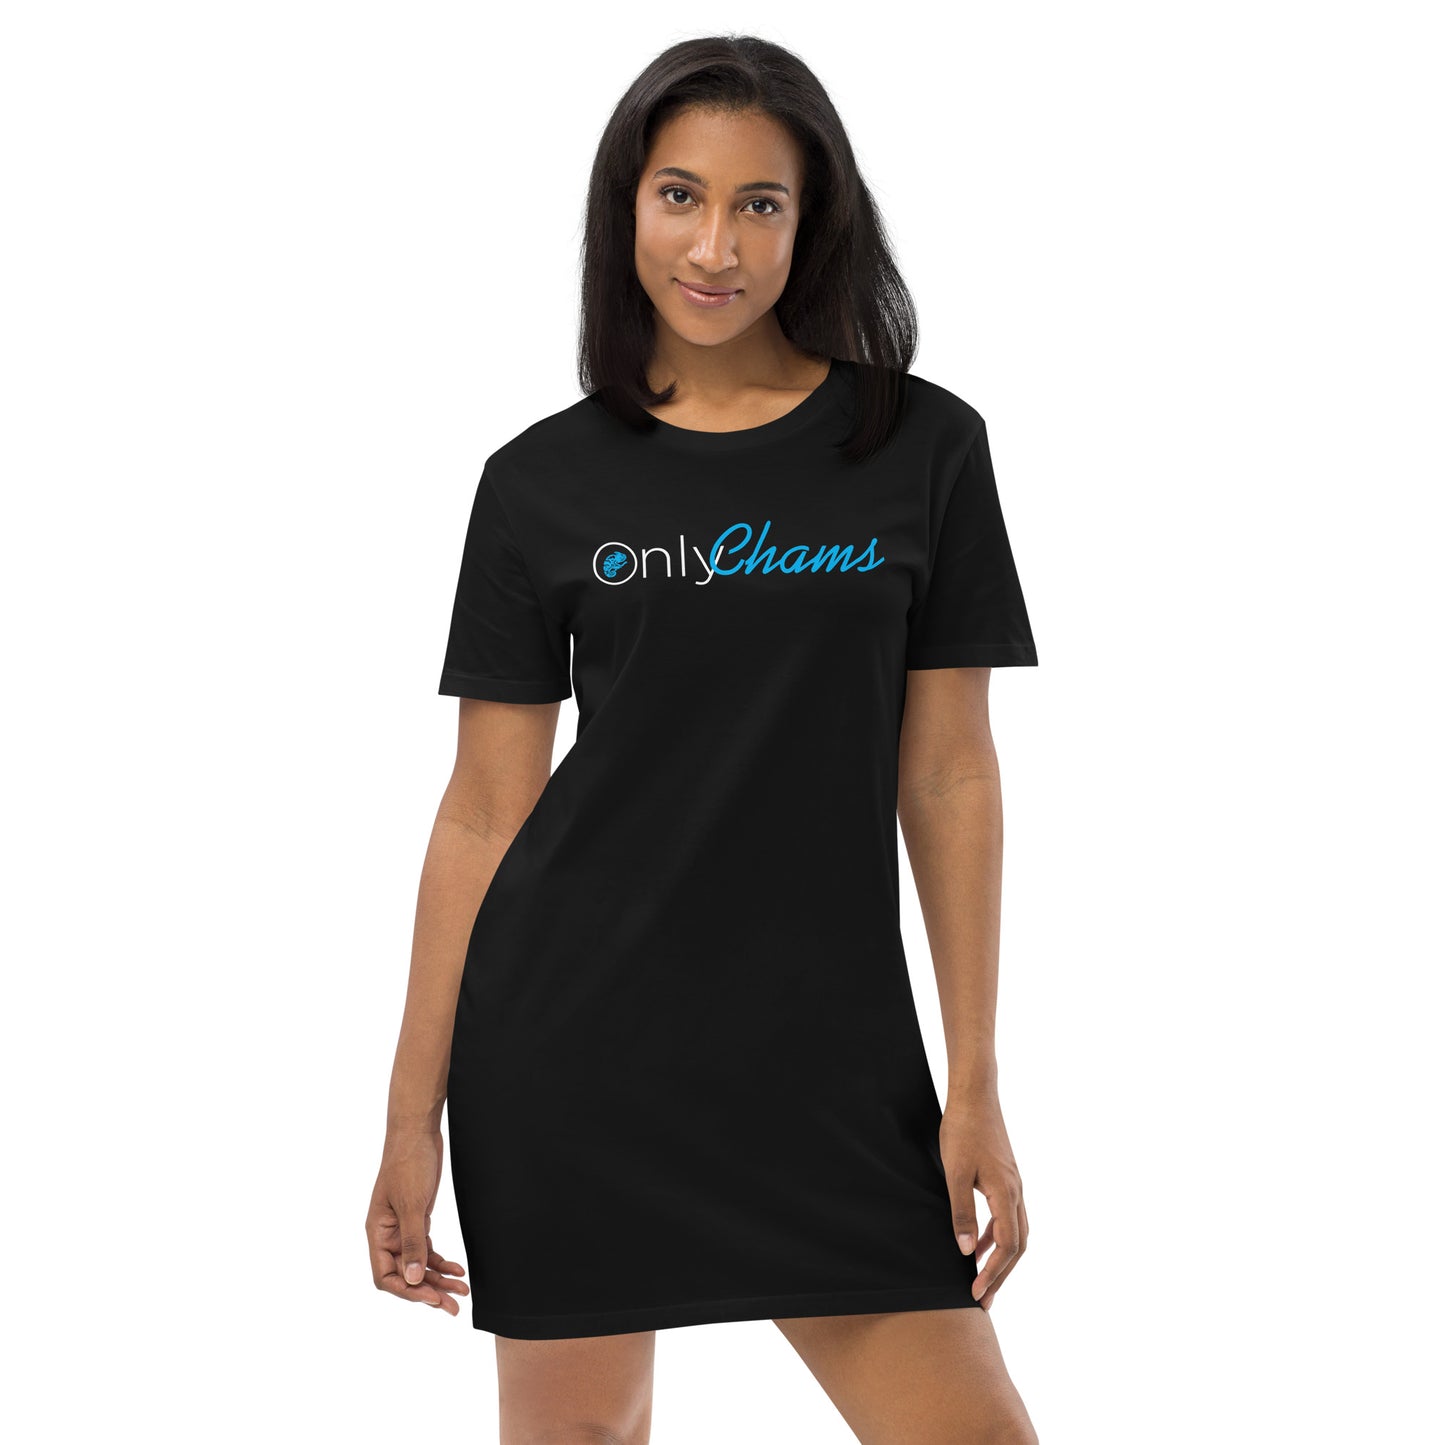 OnlyChams Women's Organic cotton t-shirt dress